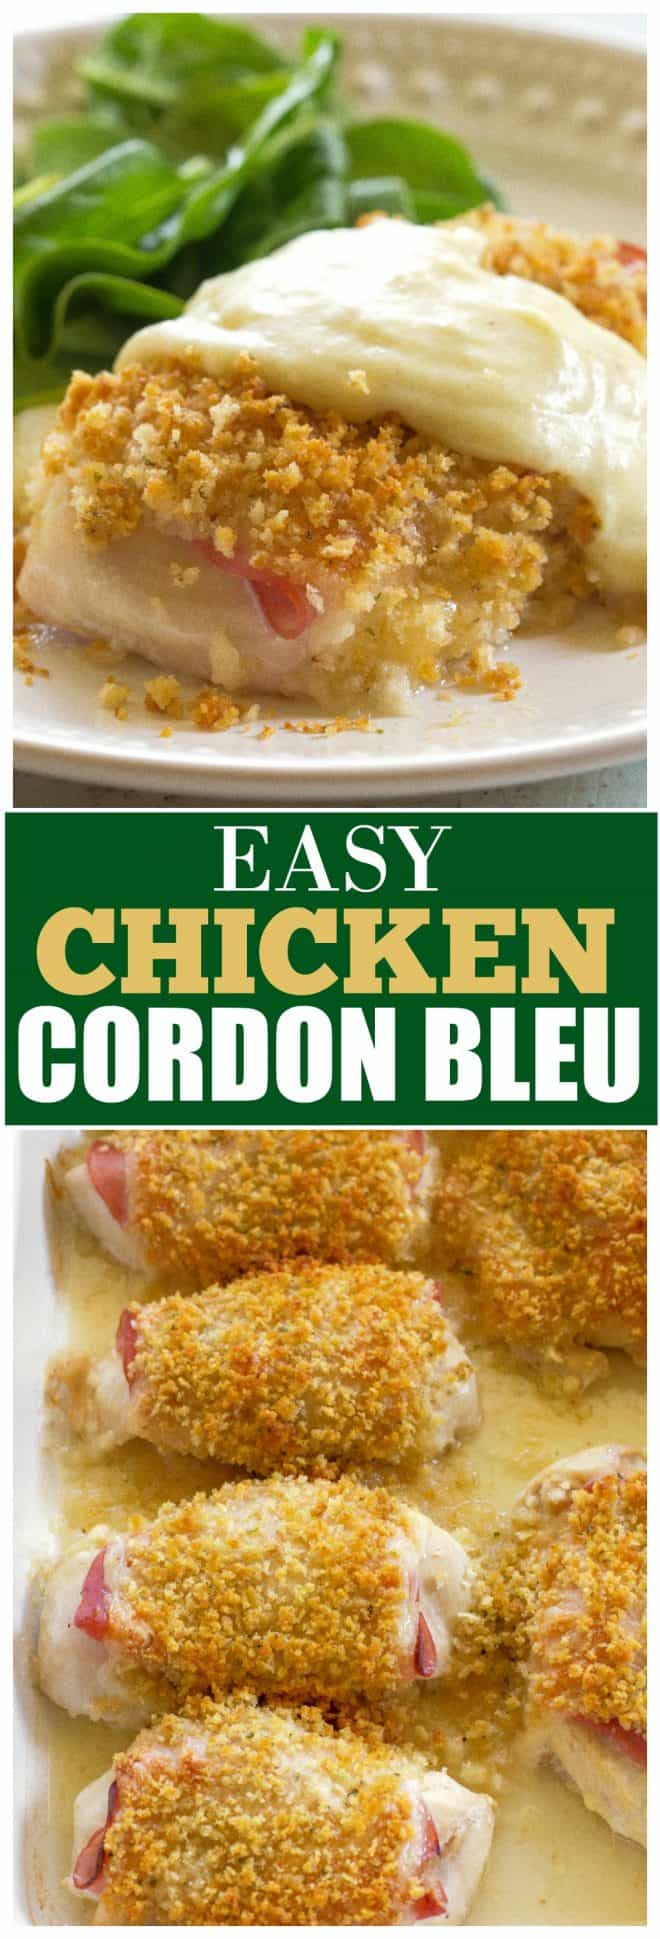 Chicken Cordon Bleu